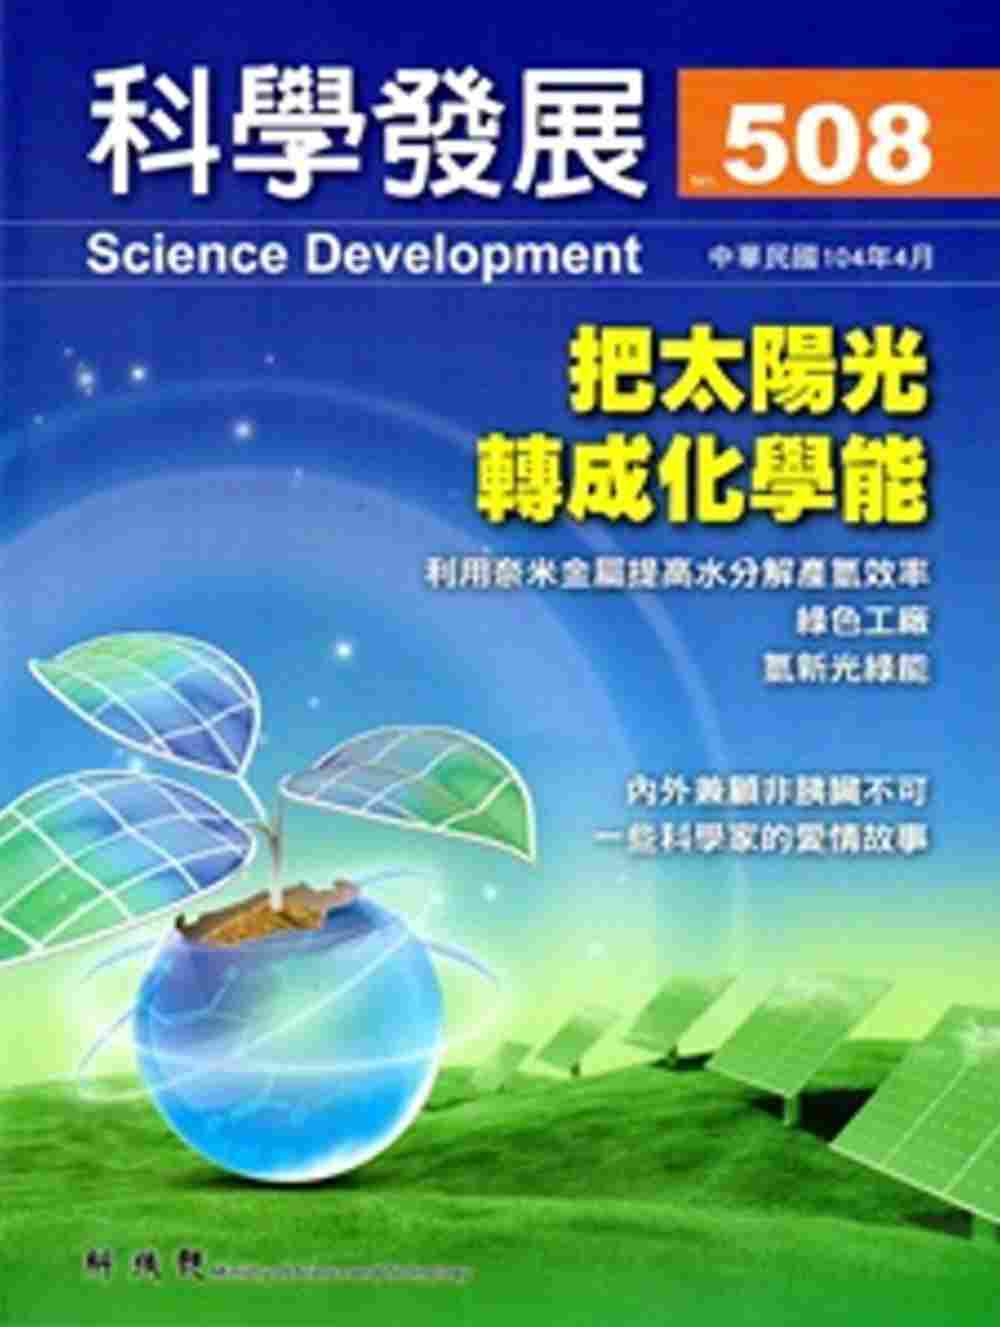 科學發展月刊第508期(104/04)